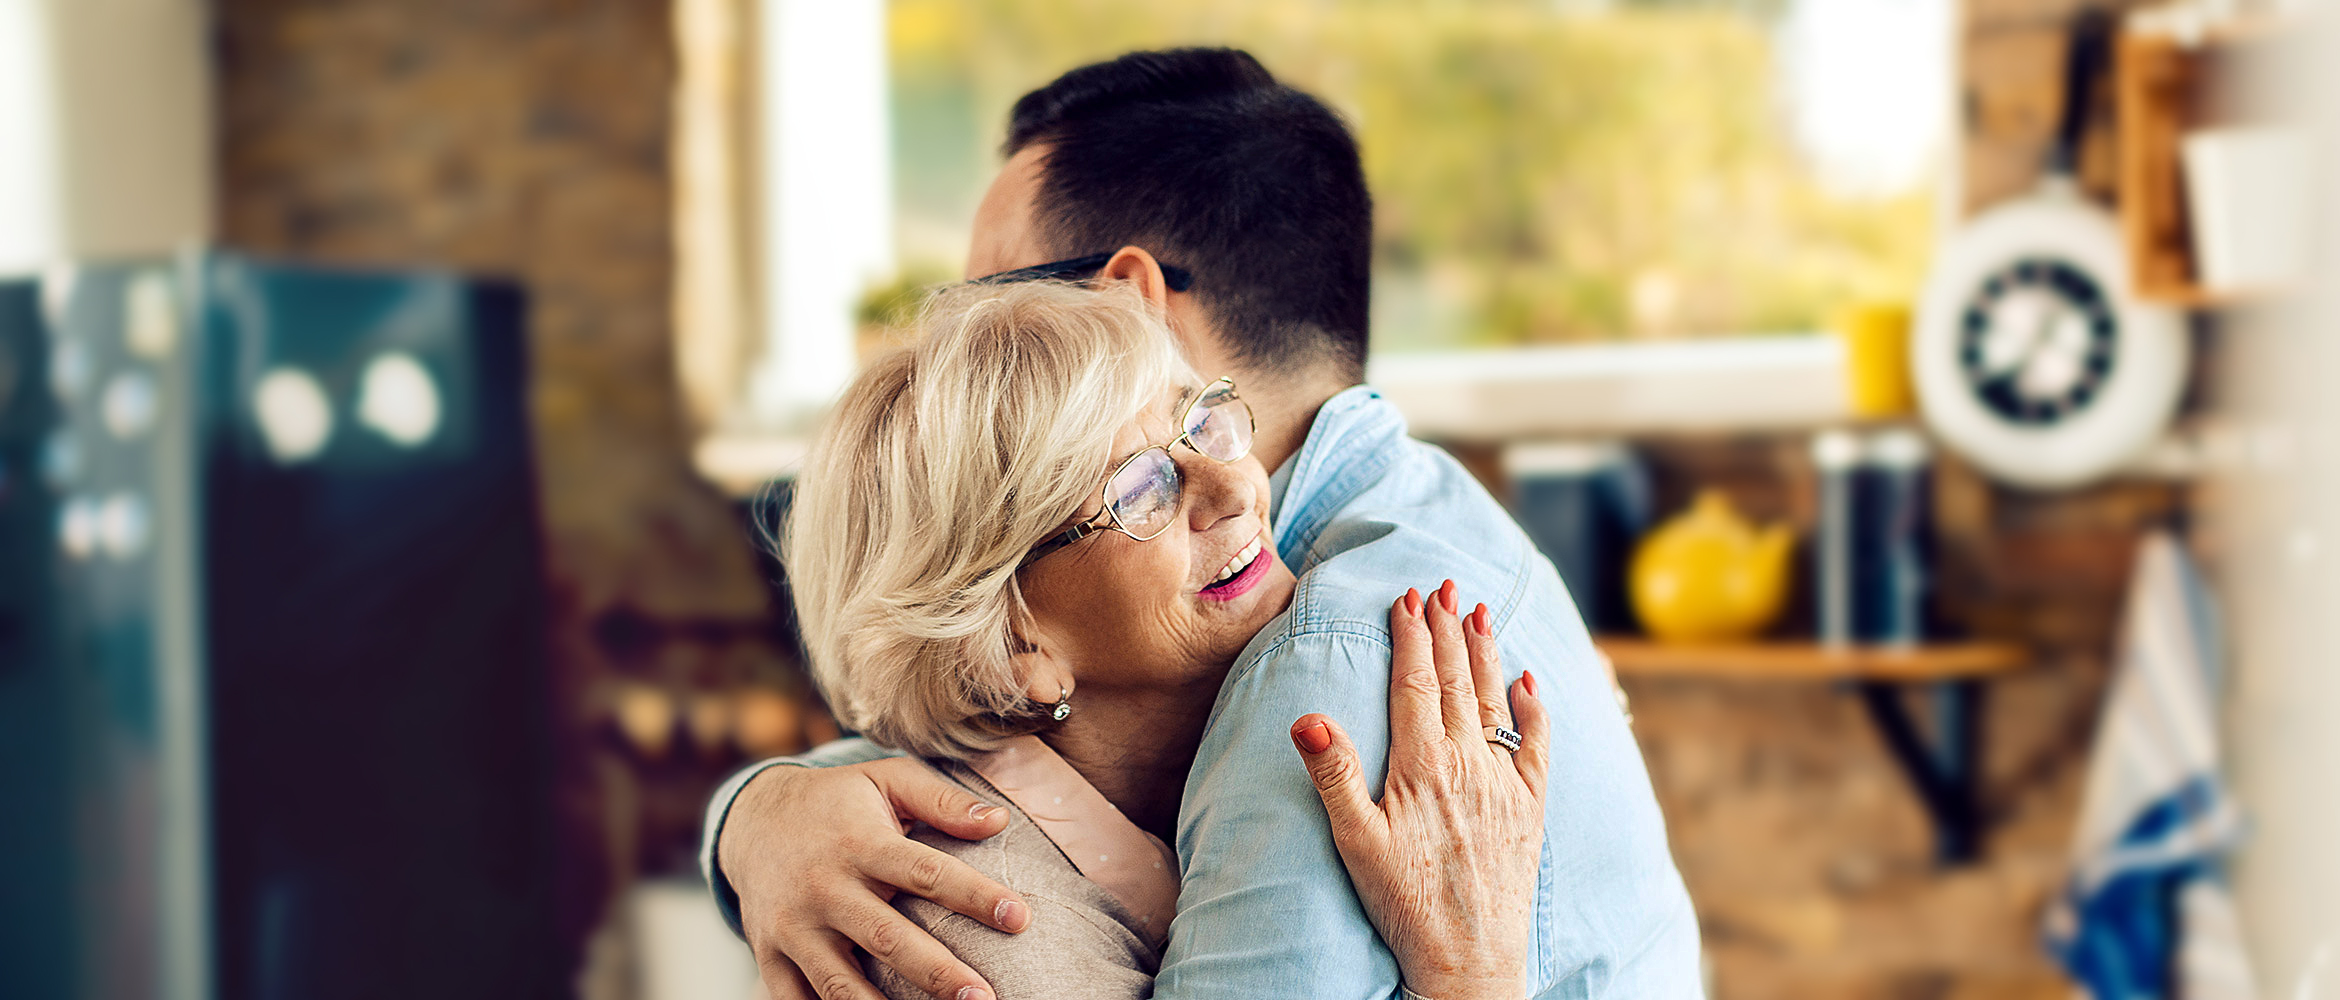 Eine ältere Dame mit grauen Haaren und Brille umarmt herzlich einen jüngeren Mann in einem gemütlichen Wohnzimmer, wobei ein Gefühl von familiärer Zuneigung und Wärme vermittelt wird.